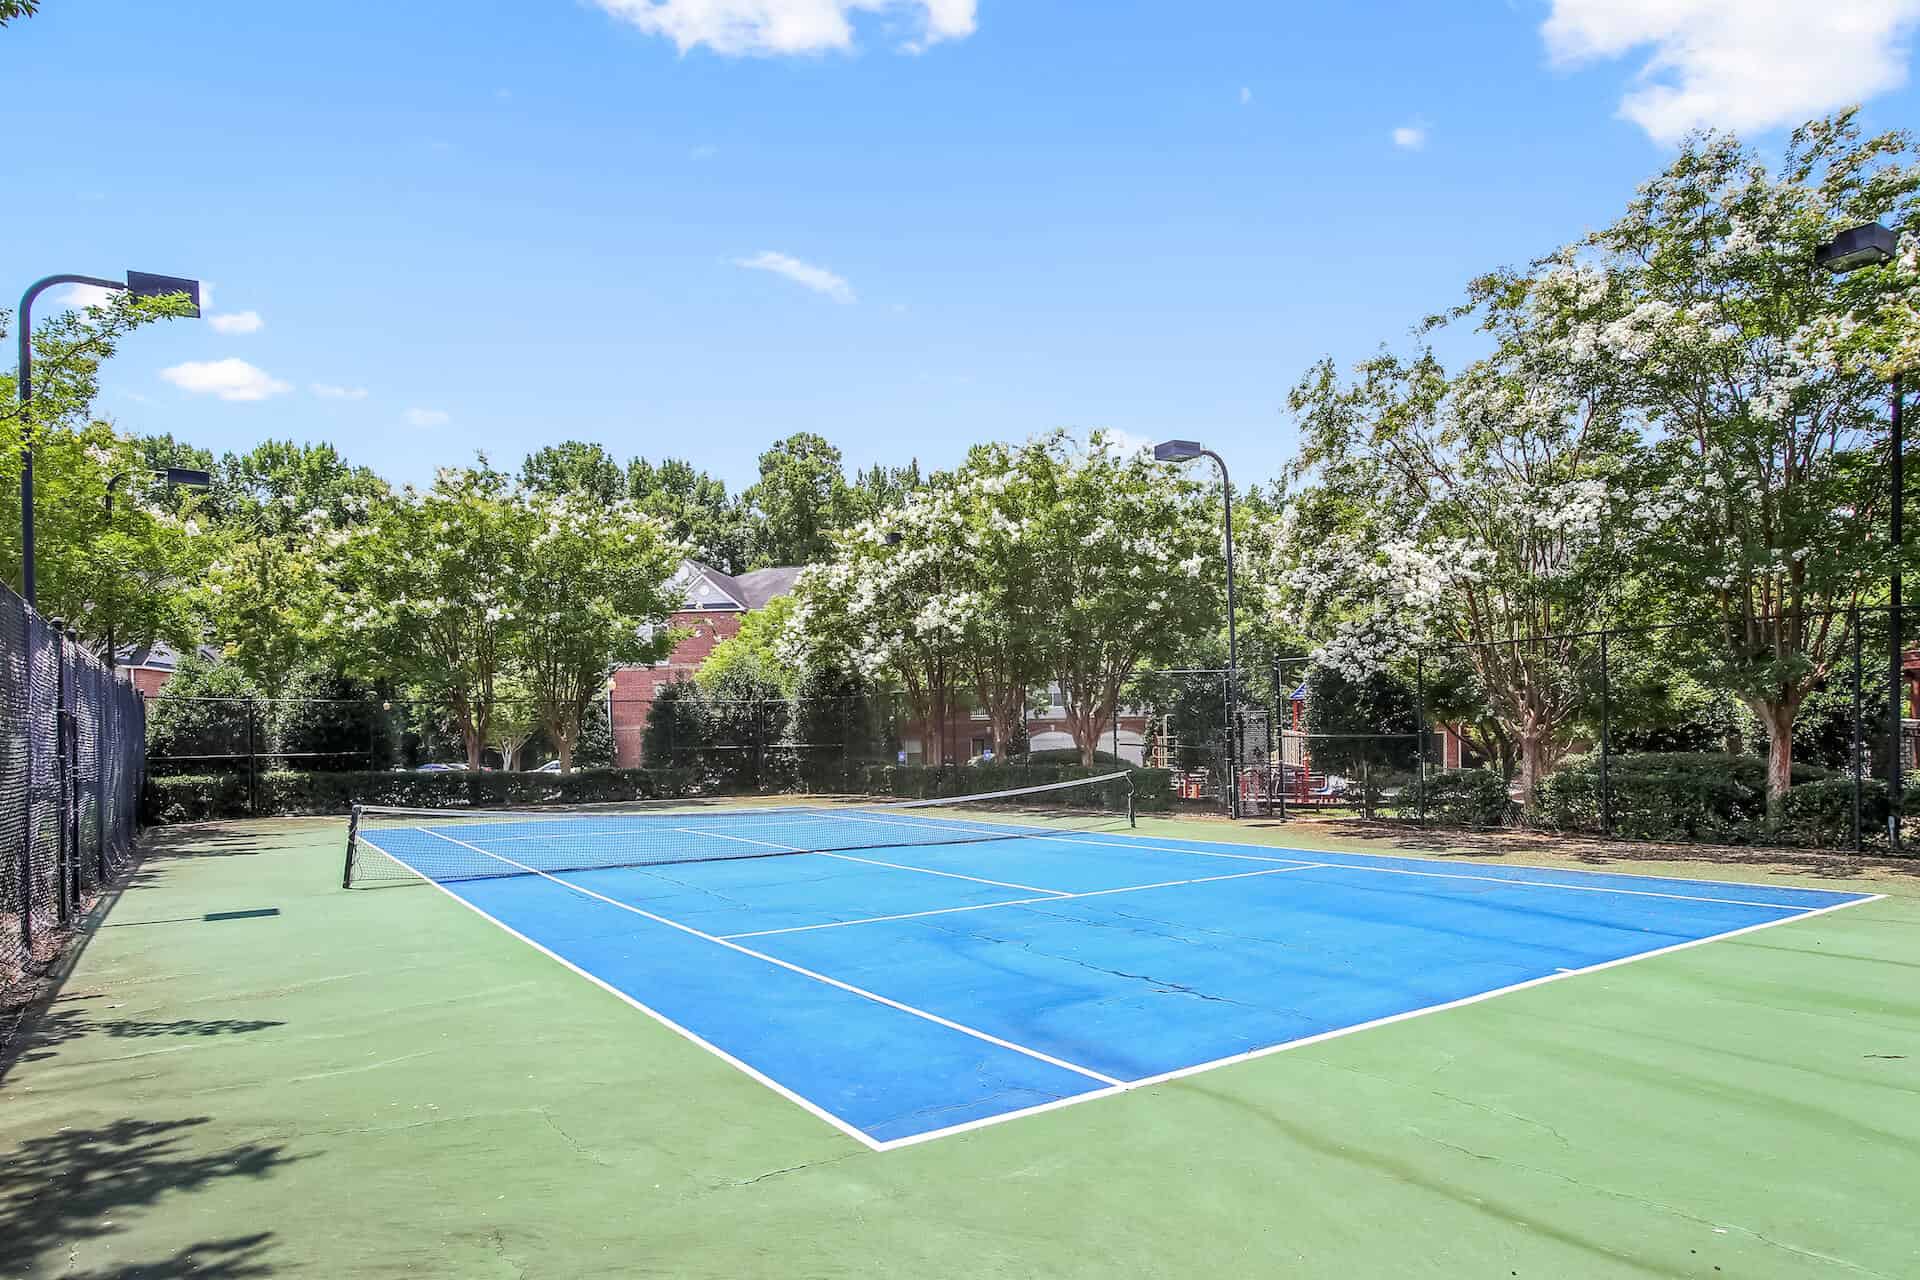 Complex tennis court